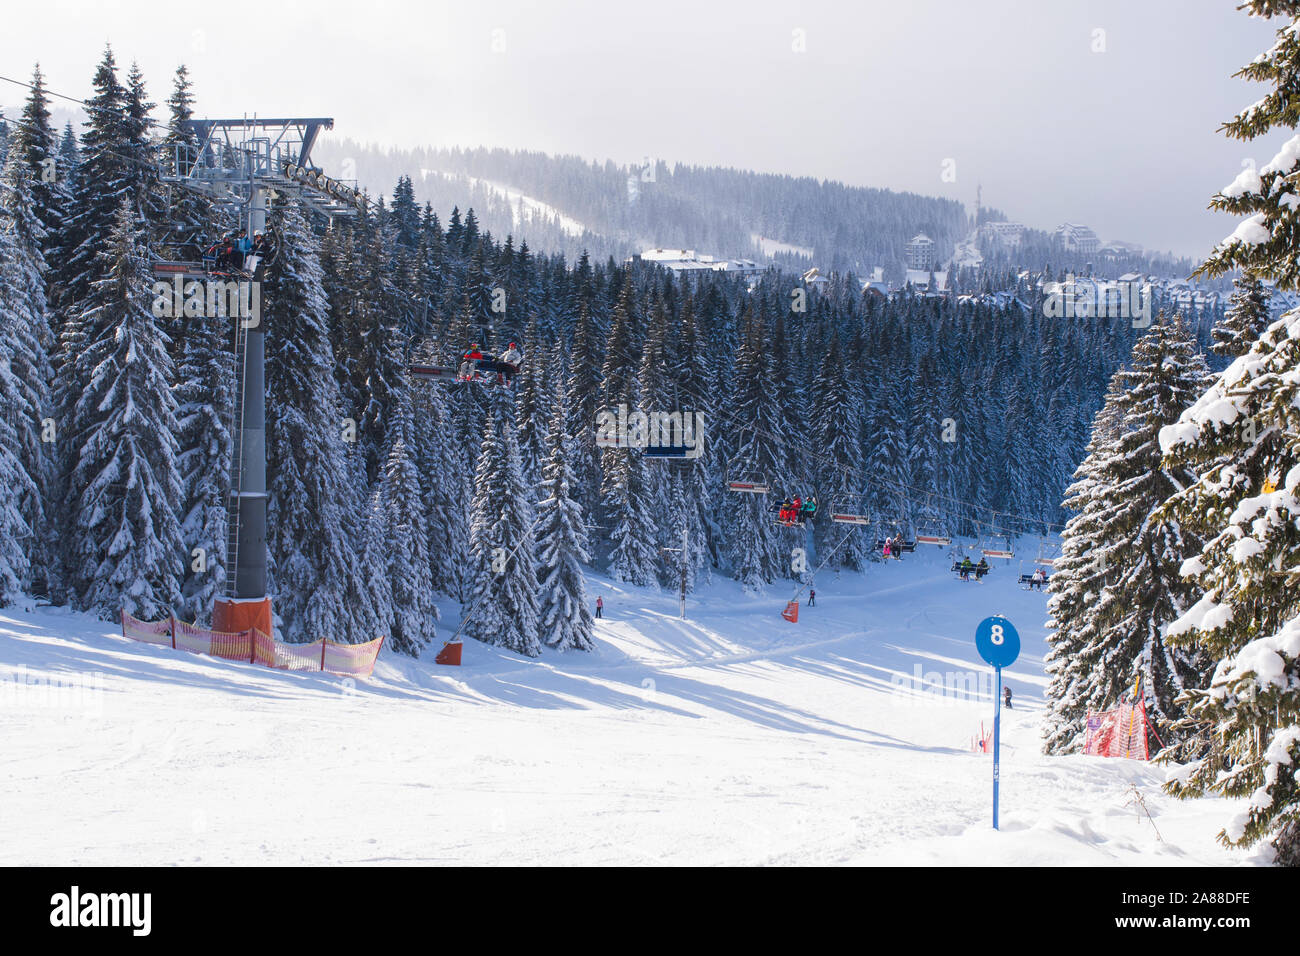 Kopaonik, Serbien - Januar 22, 2016: Skigebiet Kopaonik, Serbien, Skipiste, Menschen auf der Skilift, Berge, Häuser und Gebäude panorama Stockfoto